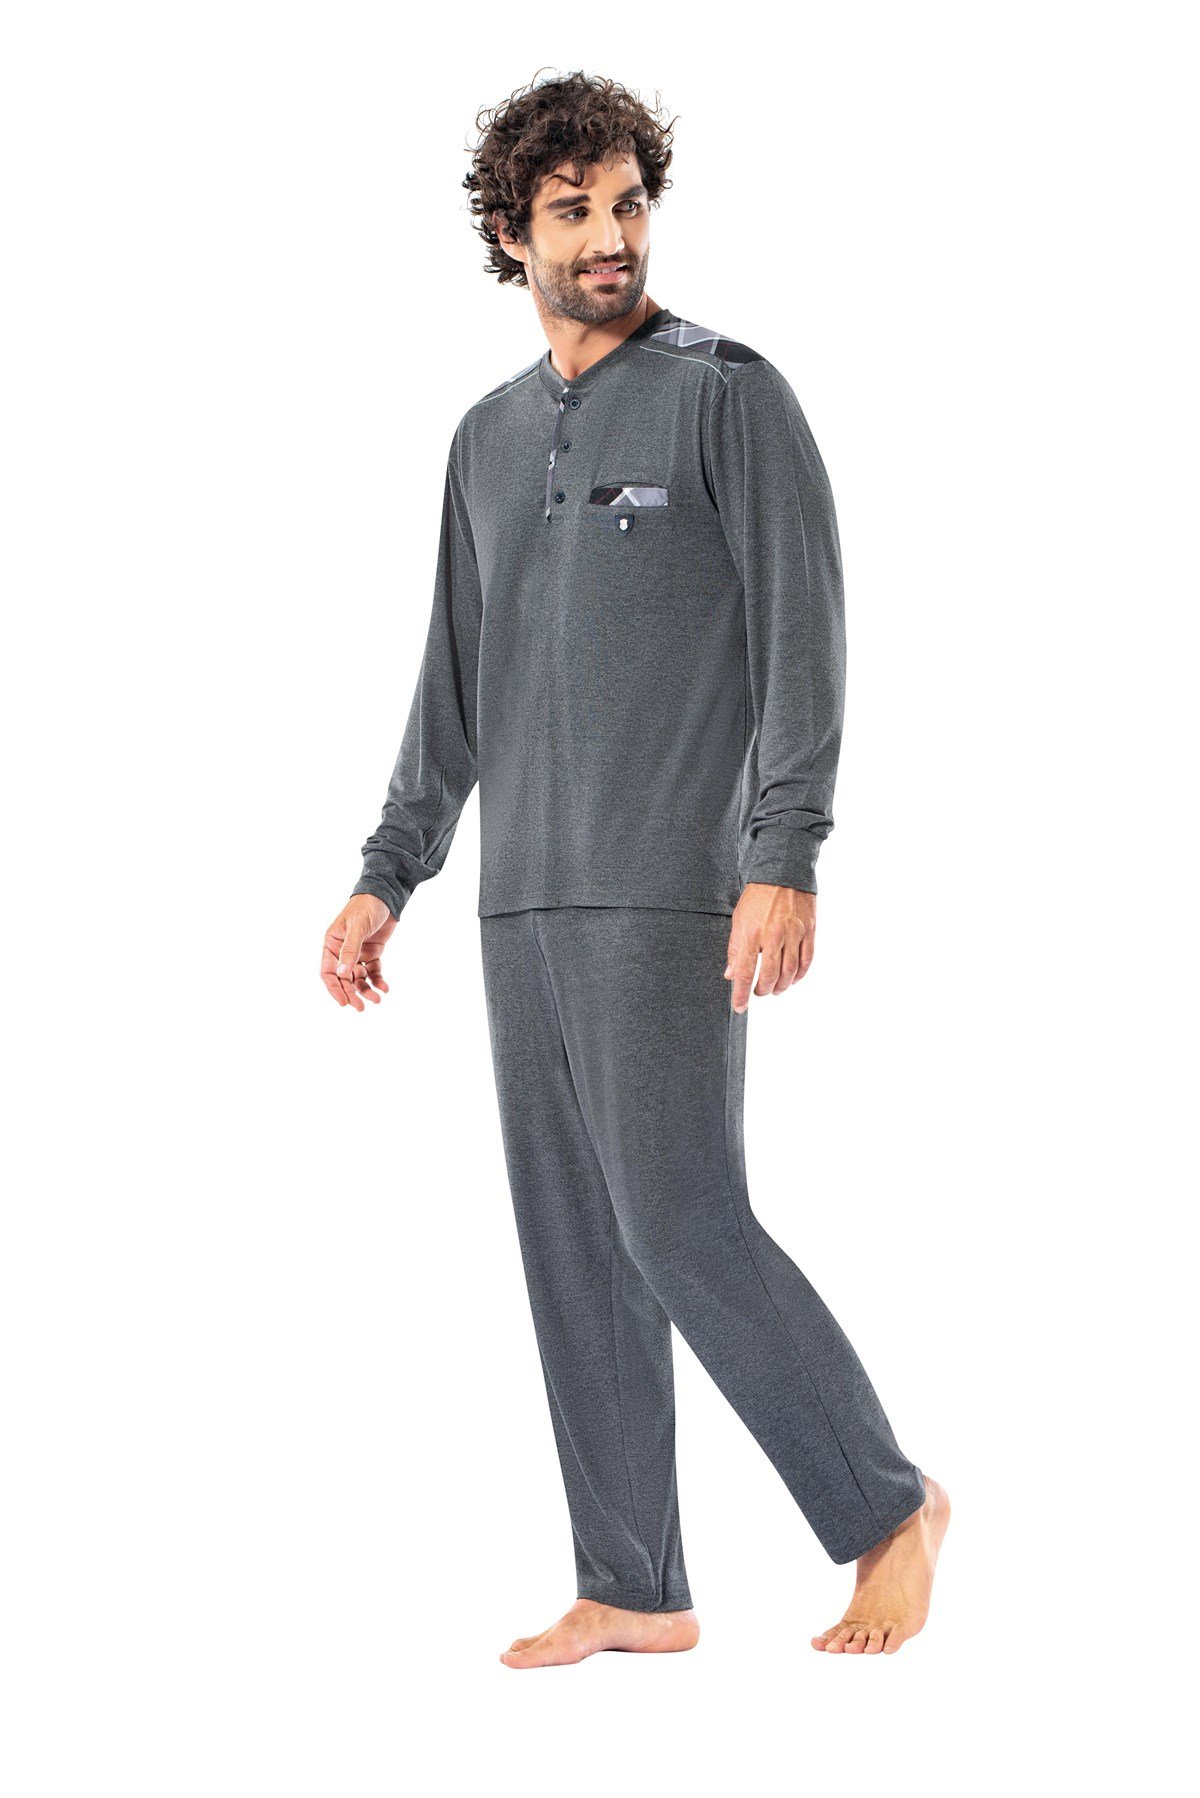 Erdem Erkek Kışlık Pijama Takımı: Erdem İç Giyim